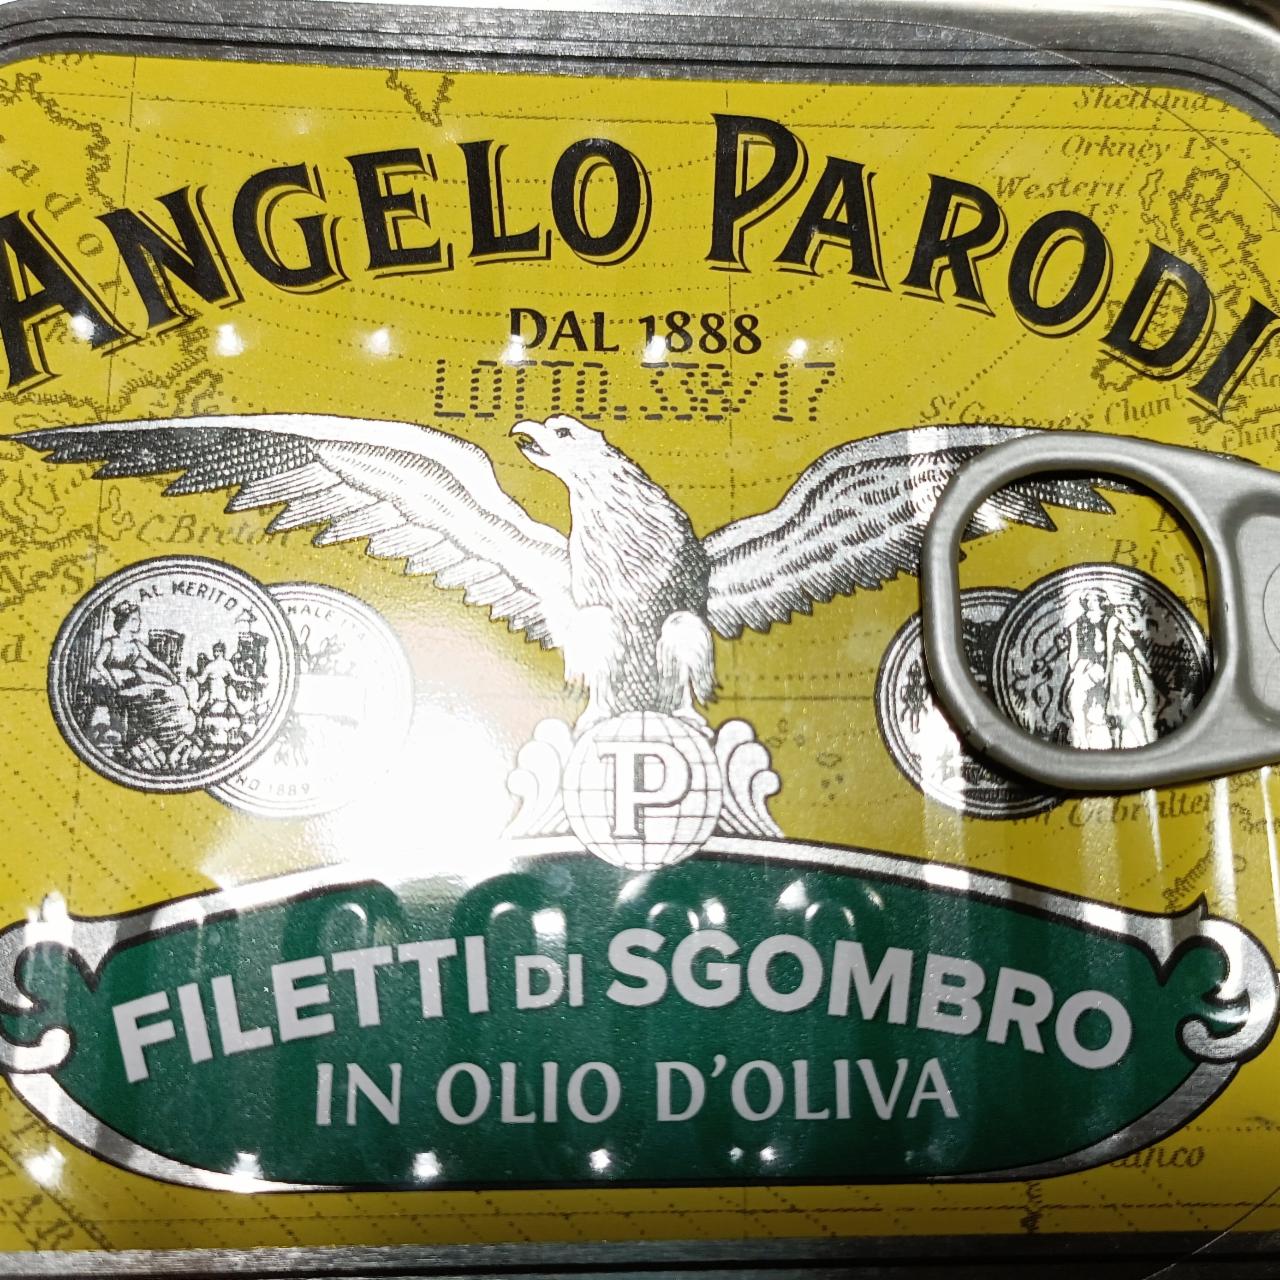 Fotografie - Filetti di Sgombro in olio d'oliva Angelo Parodi